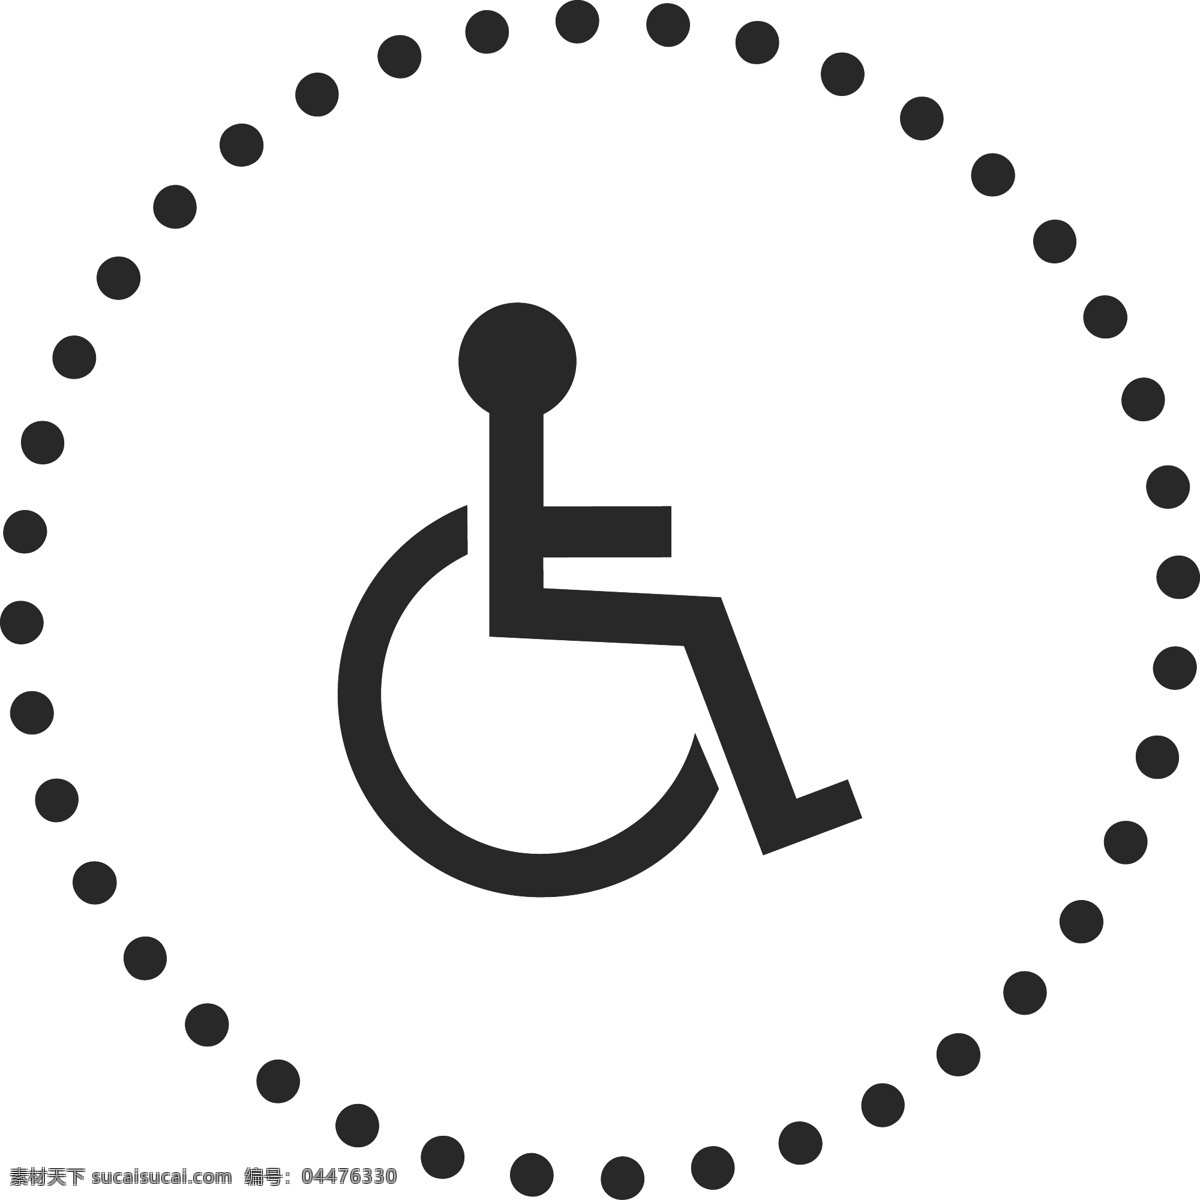 残疾人 图标 免 抠 图 残疾人标志 圆圈图标 虚线圈 ui应用图标 网页图标 电脑图标 卡通图案 卡通插画 免抠图